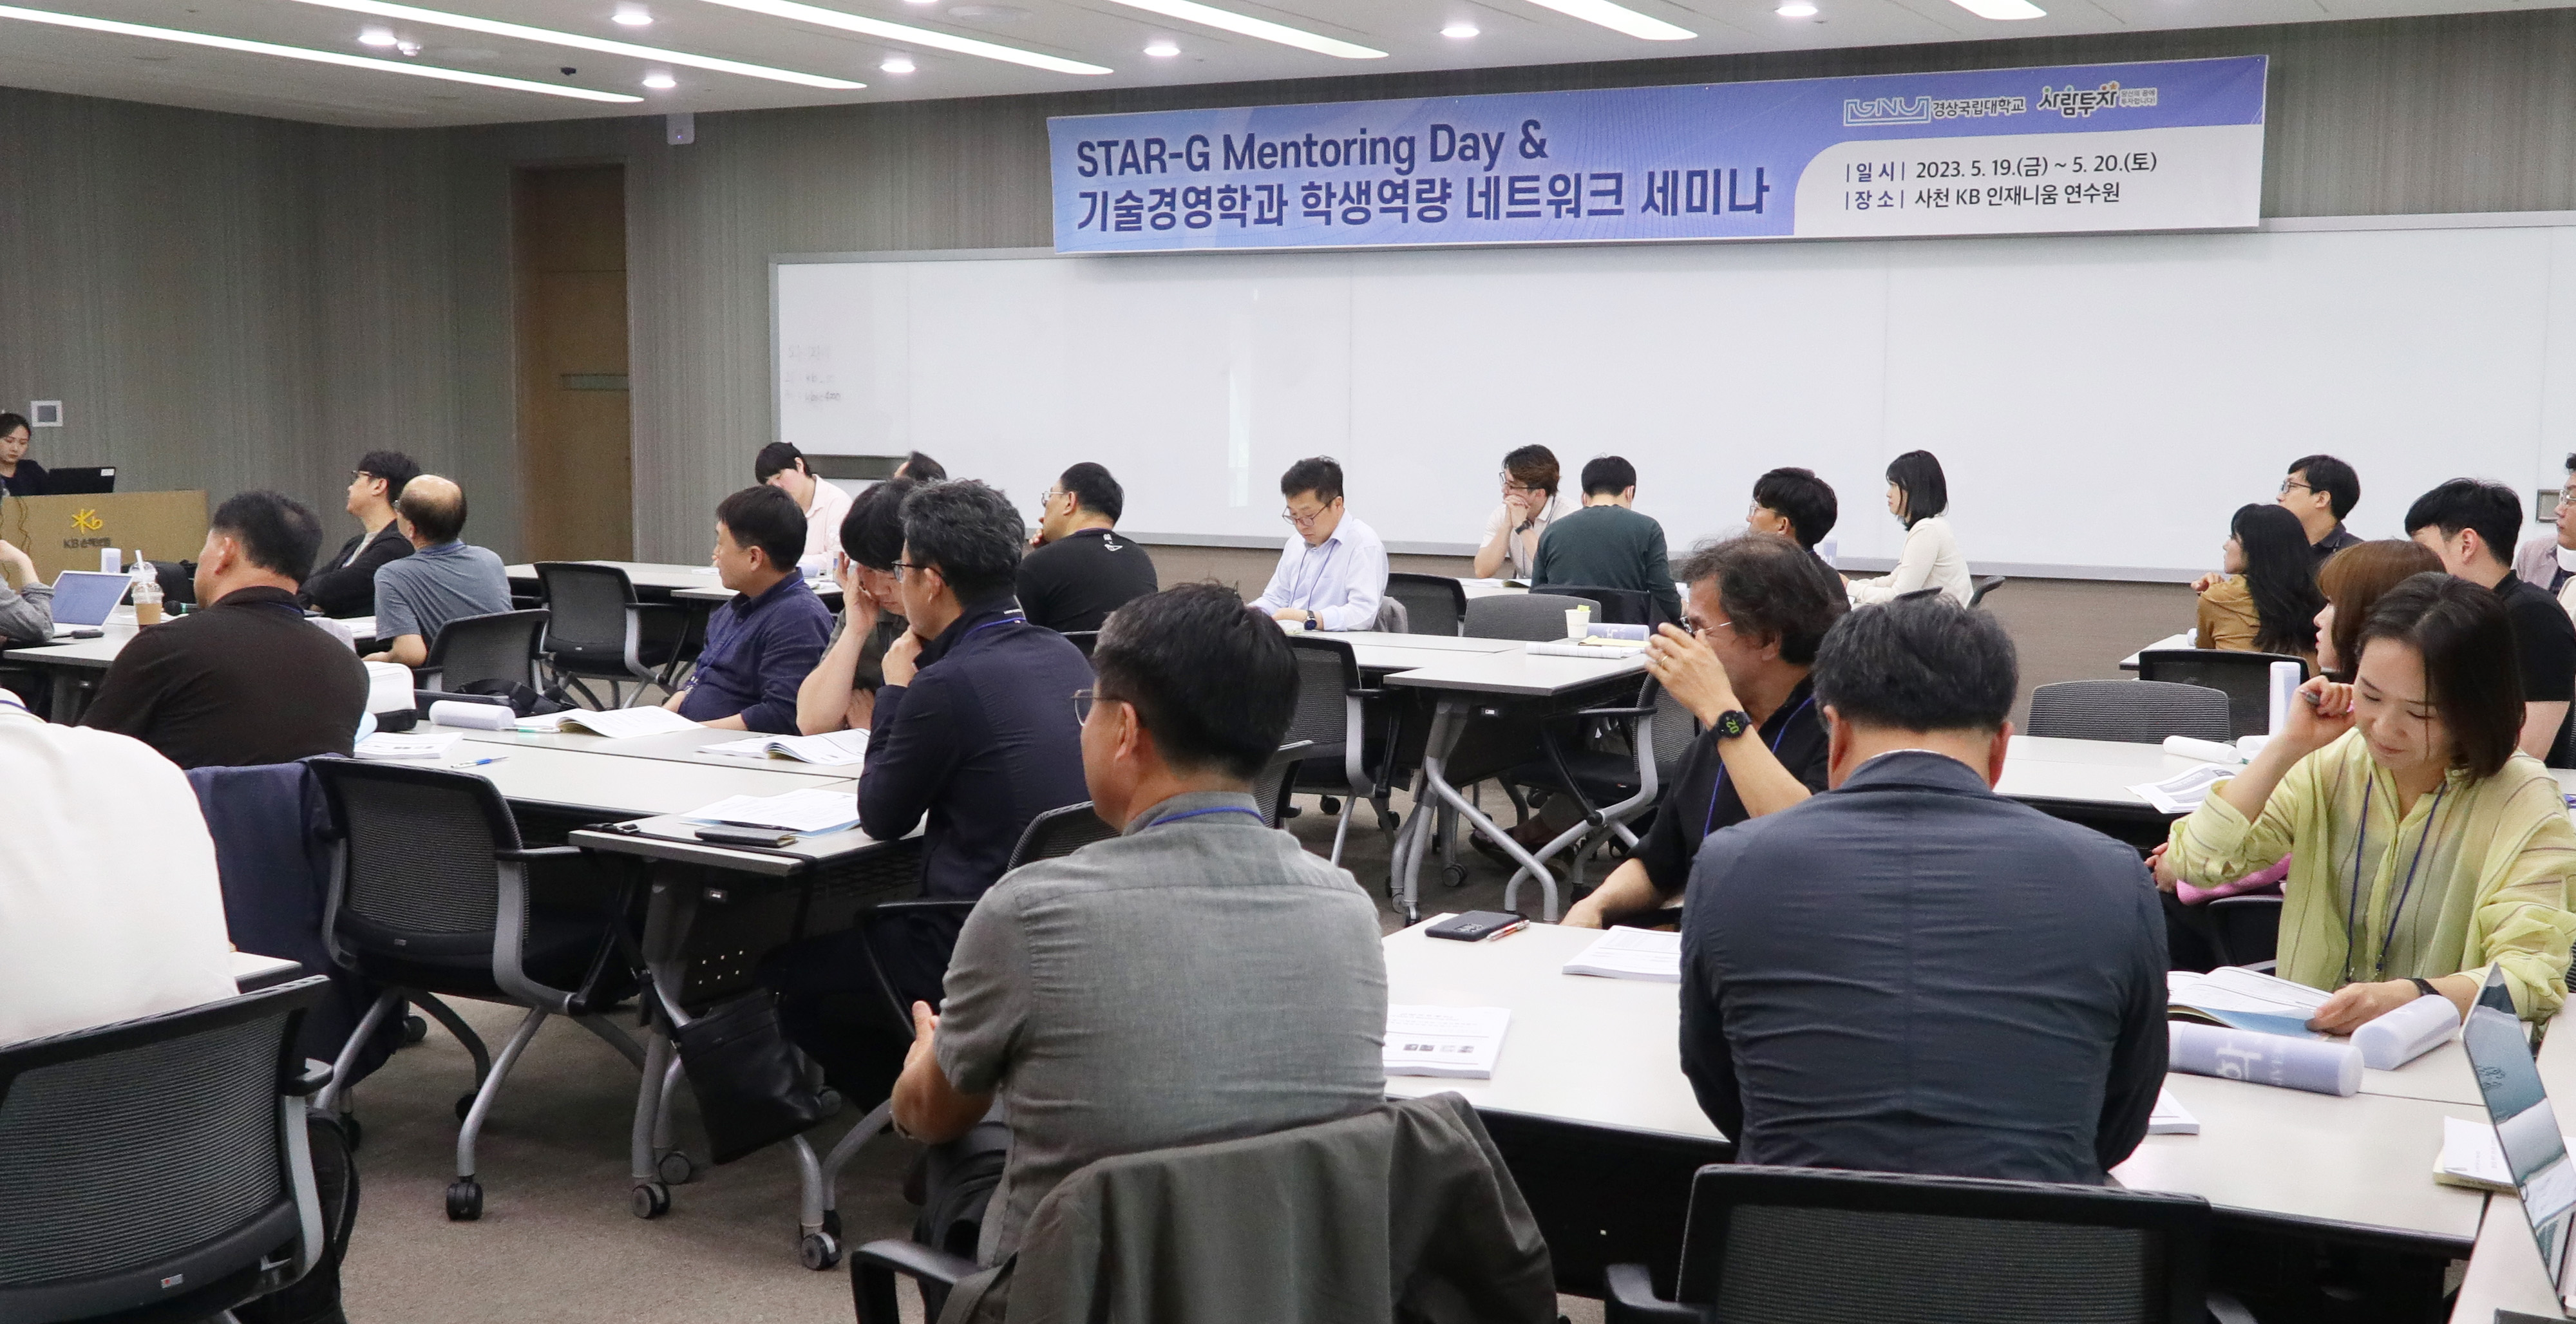 경상국립대학교 대학원 기술경영학과(MOT)는 5월 19-20일 이틀간 ‘현장문제해결형 산학프로젝트 고도화를 위한 STAR-G 멘토링 데이’를 개최했다. 